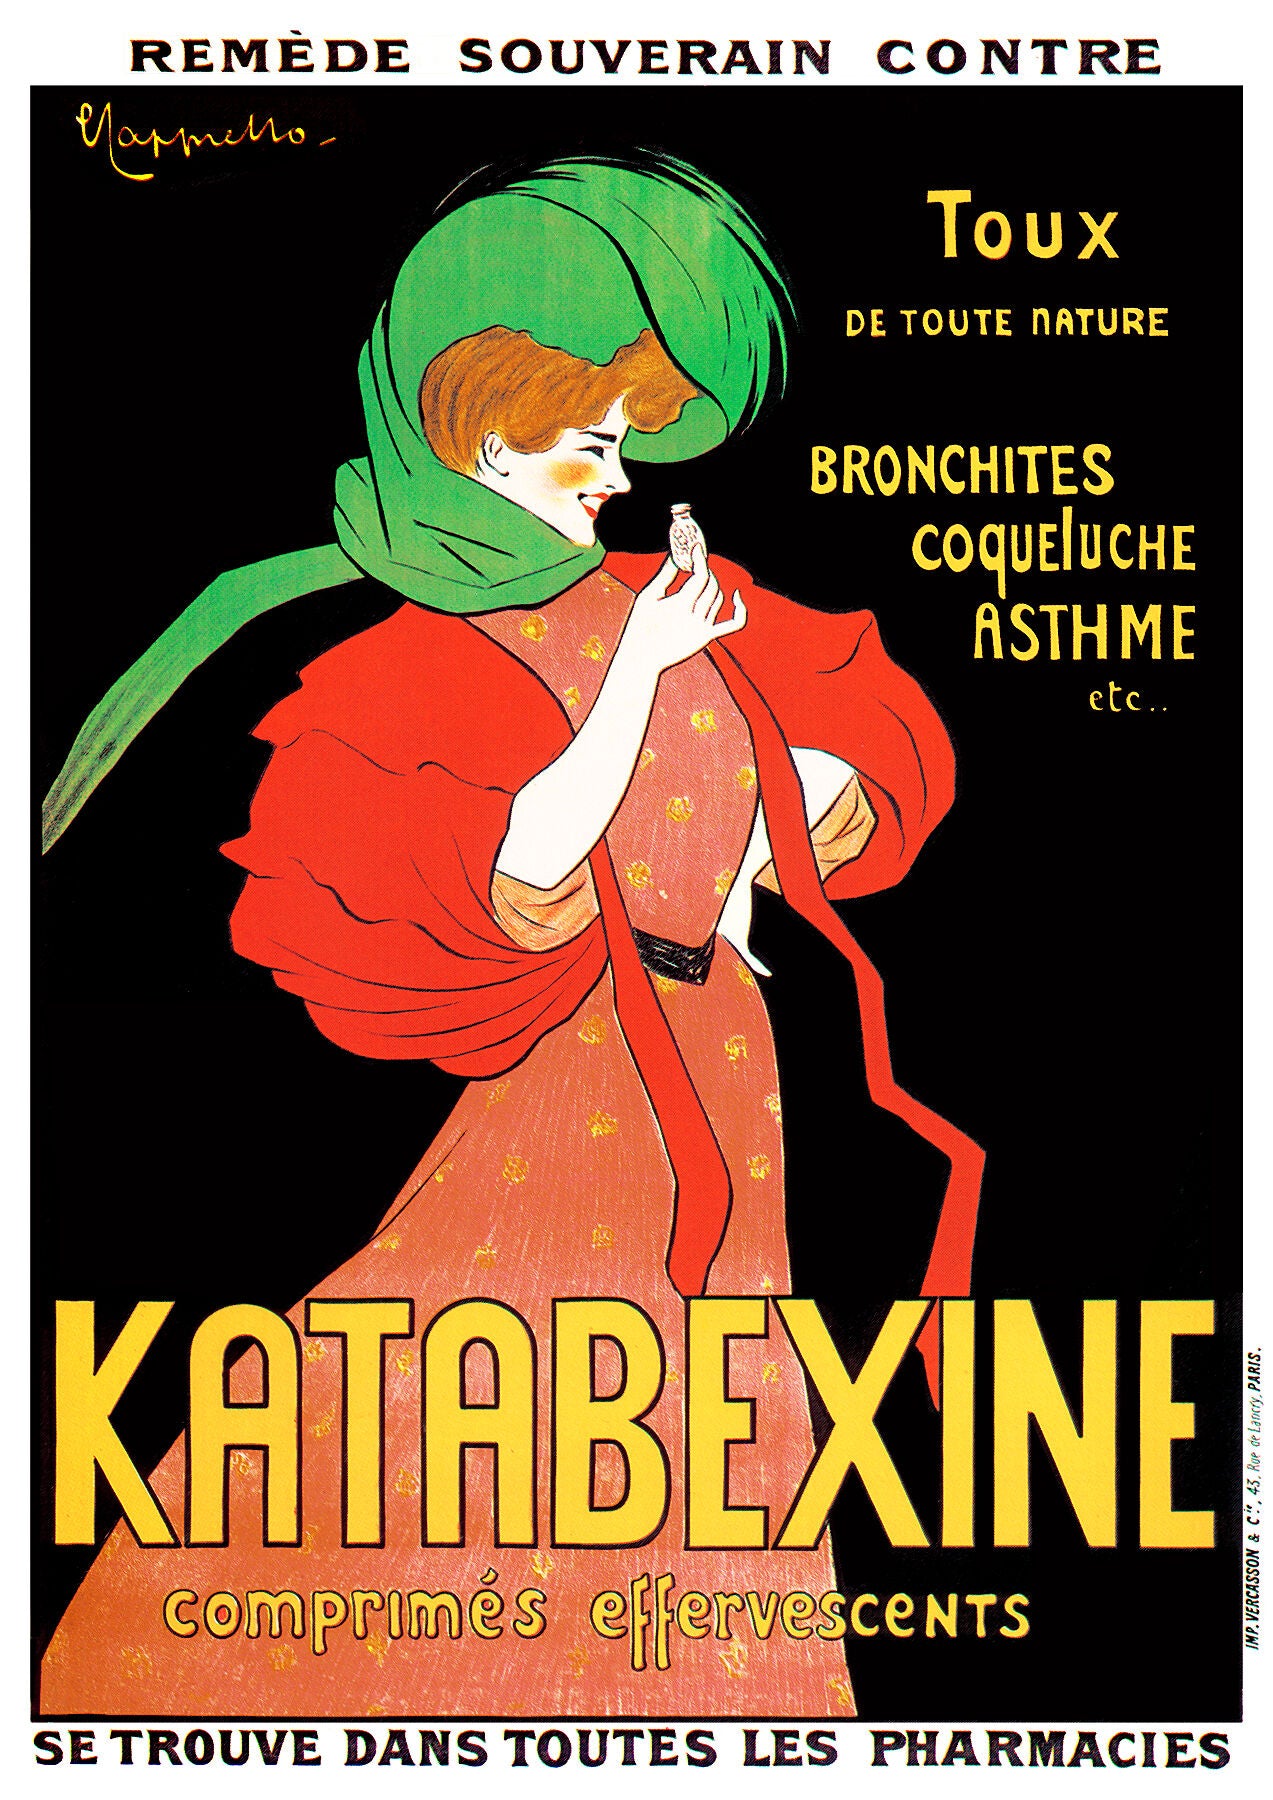 Katabexine poster by Leonetto Cappiello